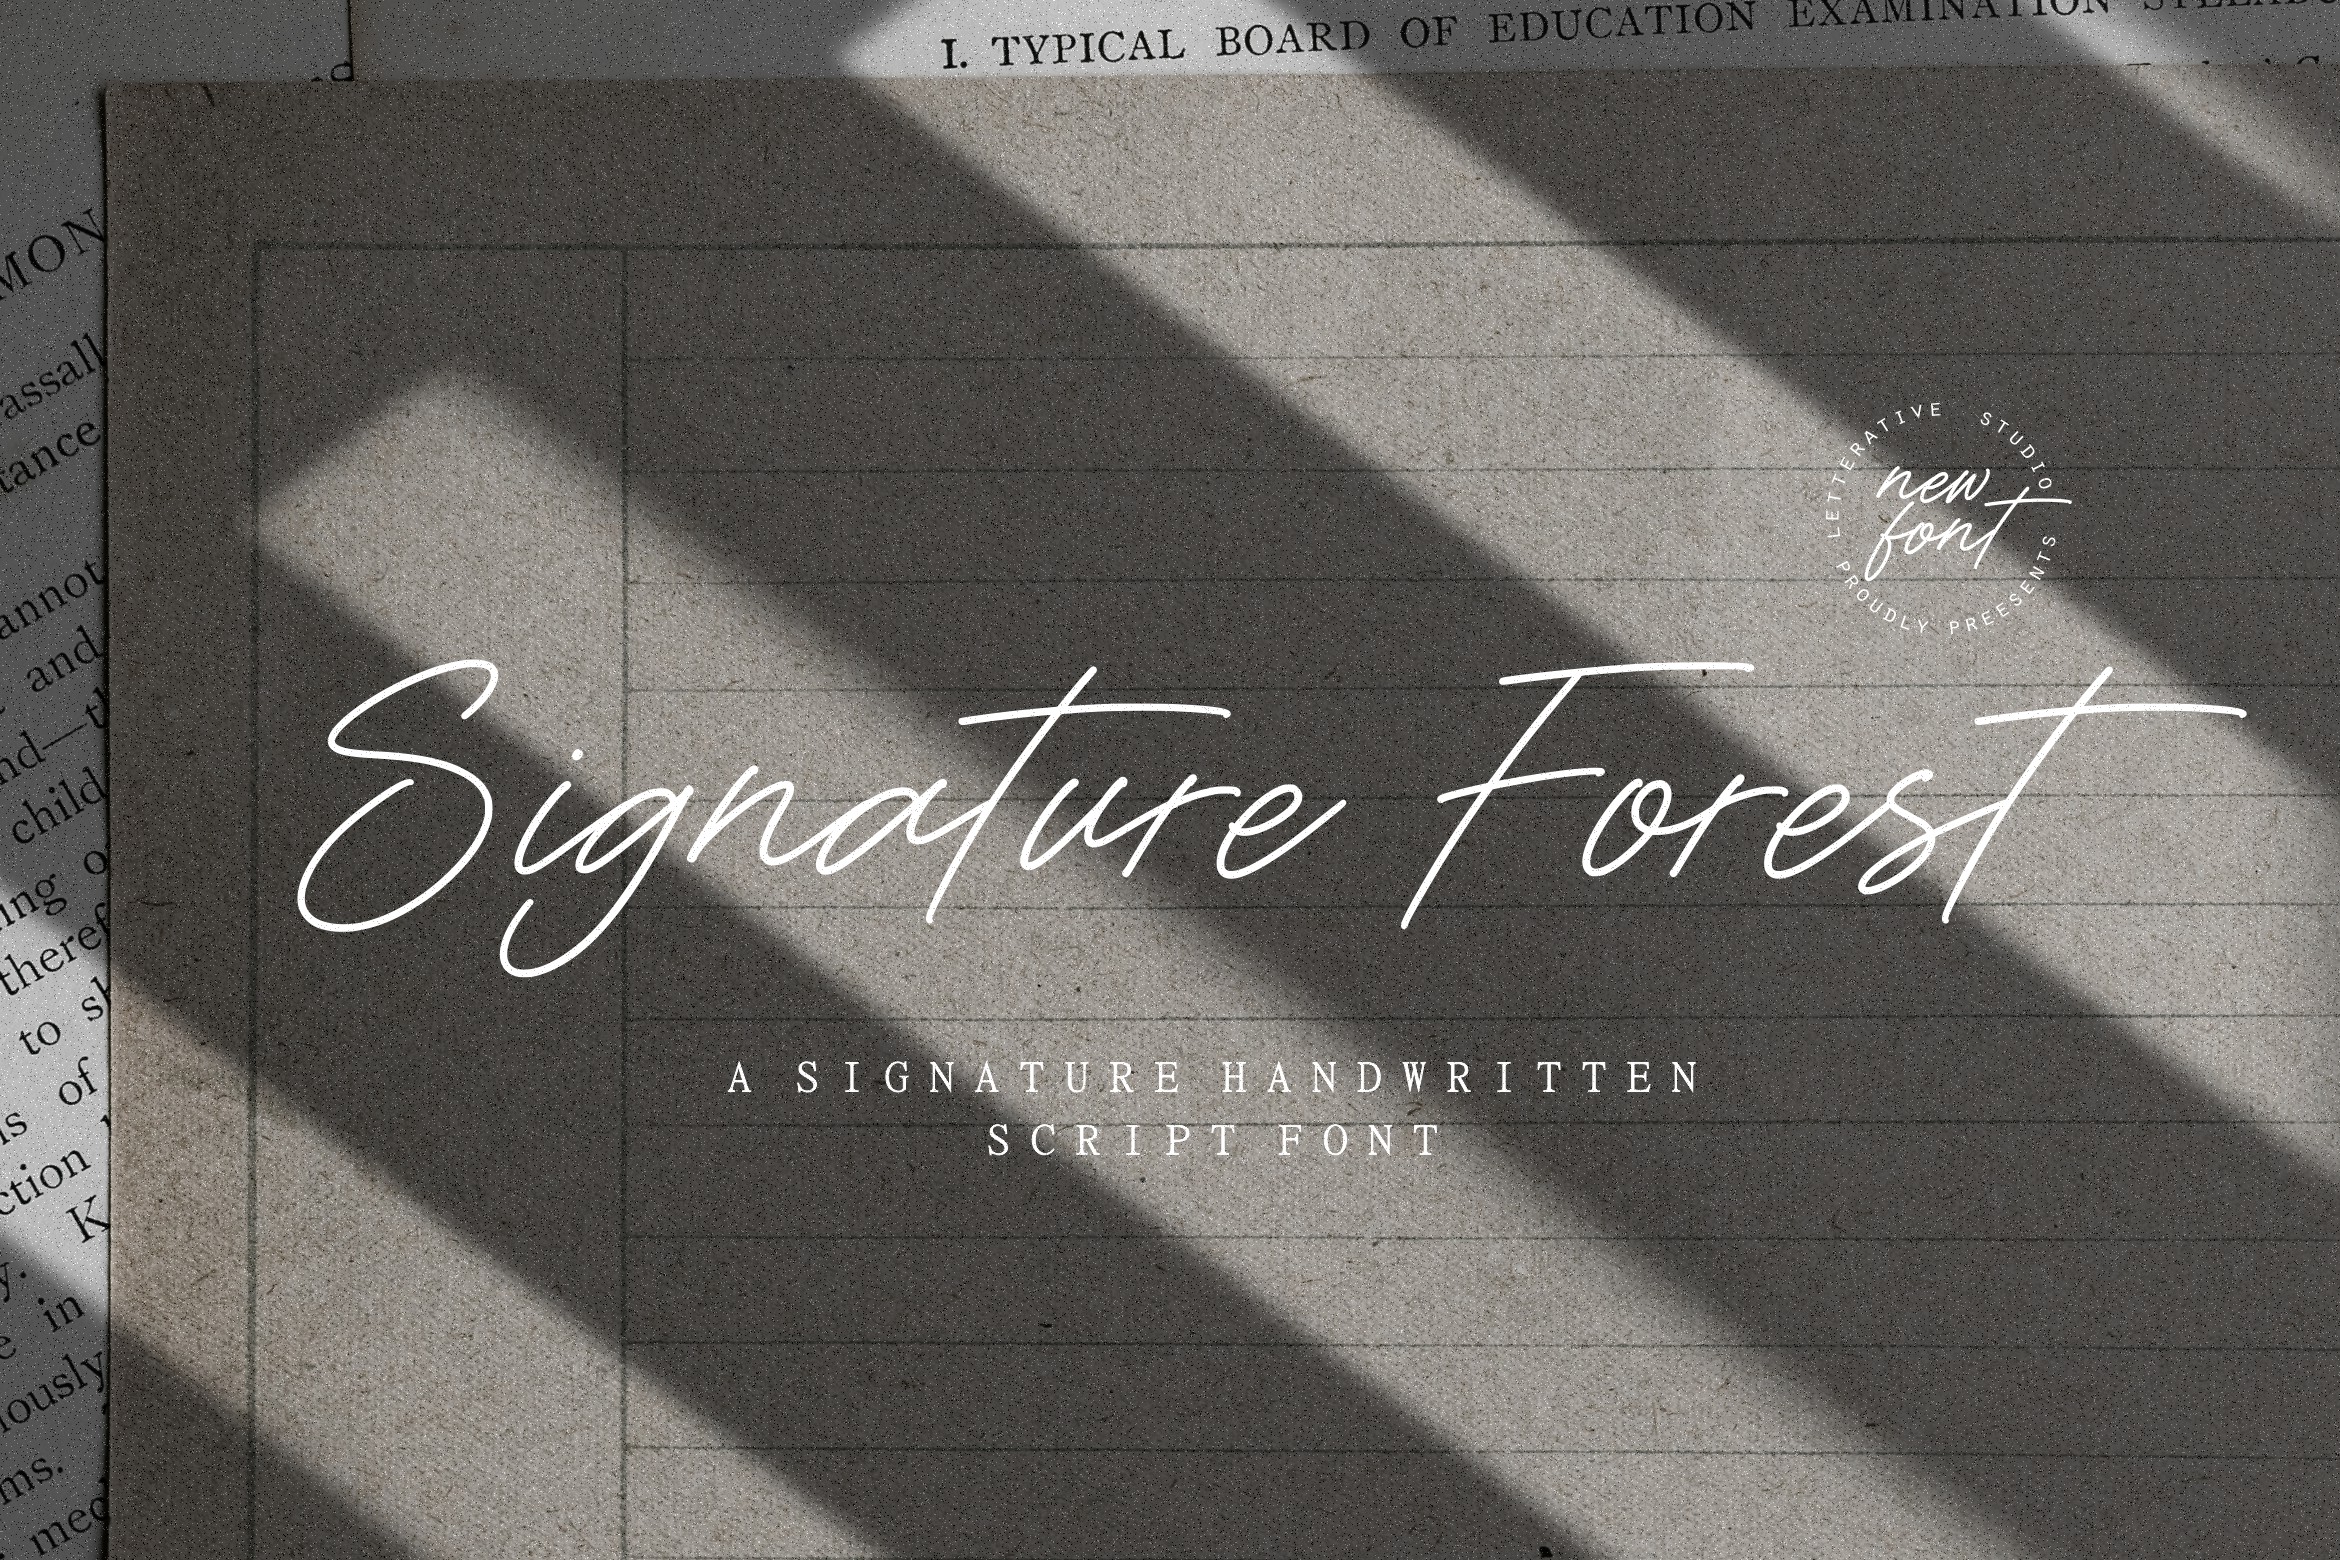 Signature Forest